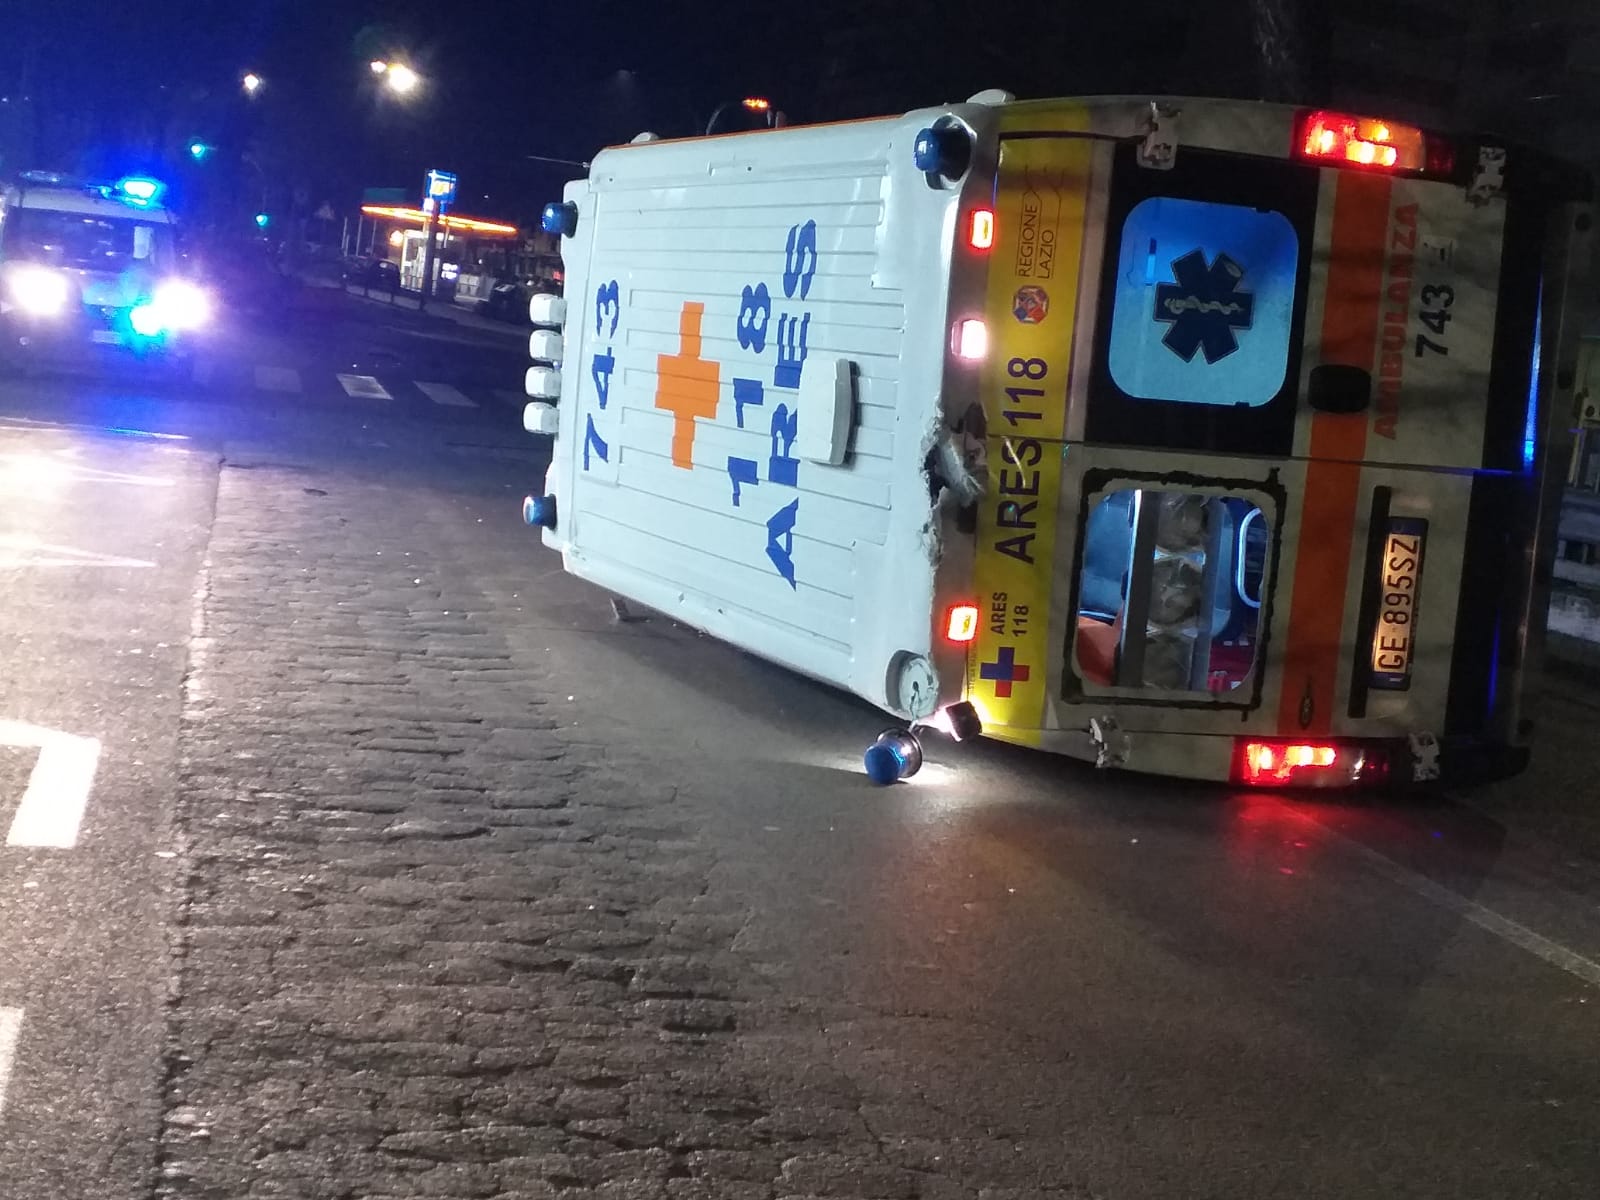 Roma, nella notte ambulanza coinvolta in un incidente. Ugl Salute: “Tragedia sfiorata, sicurezza sul lavoro sia priorità”